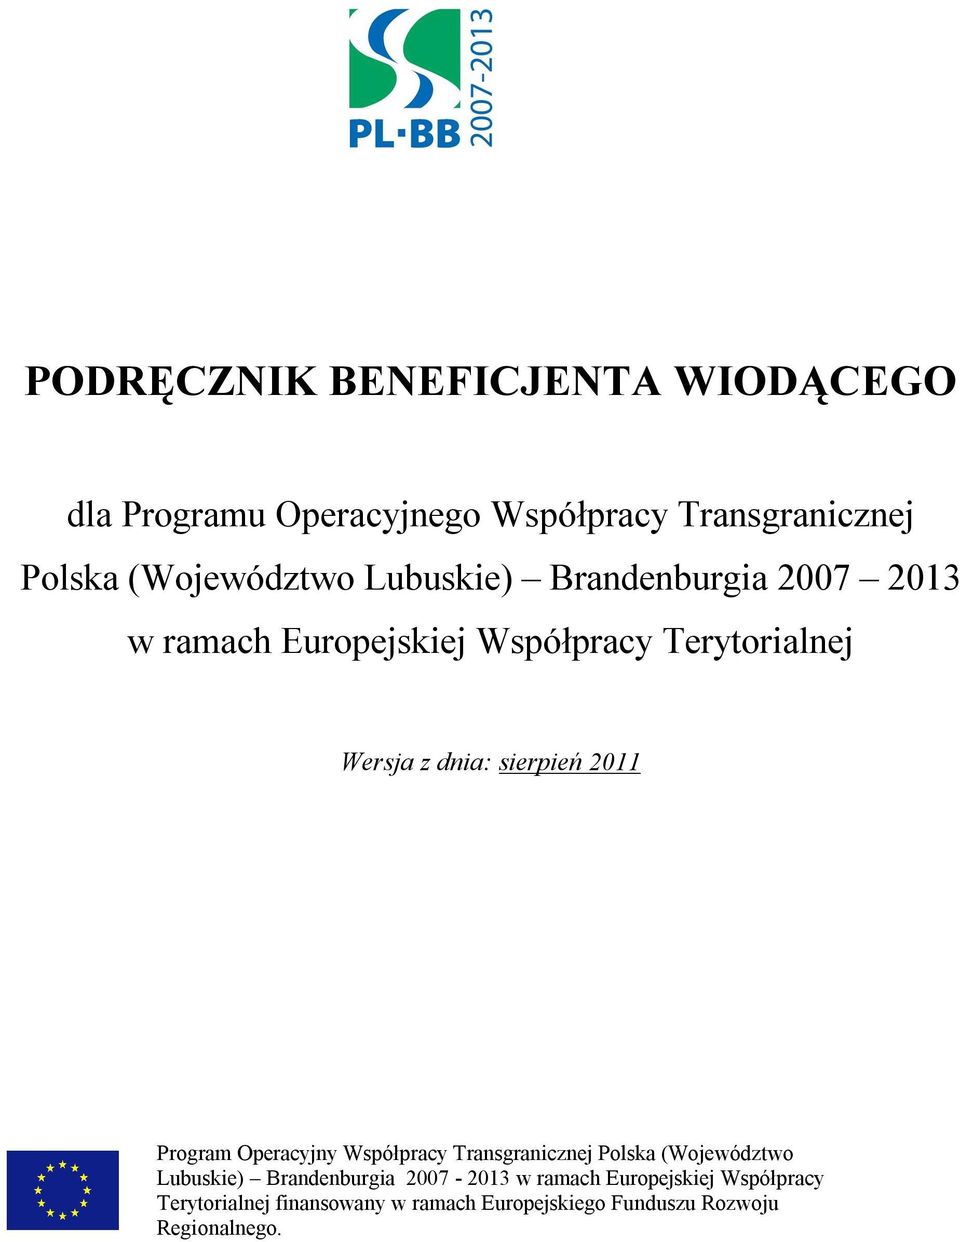 Współpracy Transgranicznej Polska (Województwo Lubuskie) Brandenburgia 2007-2013 w ramach